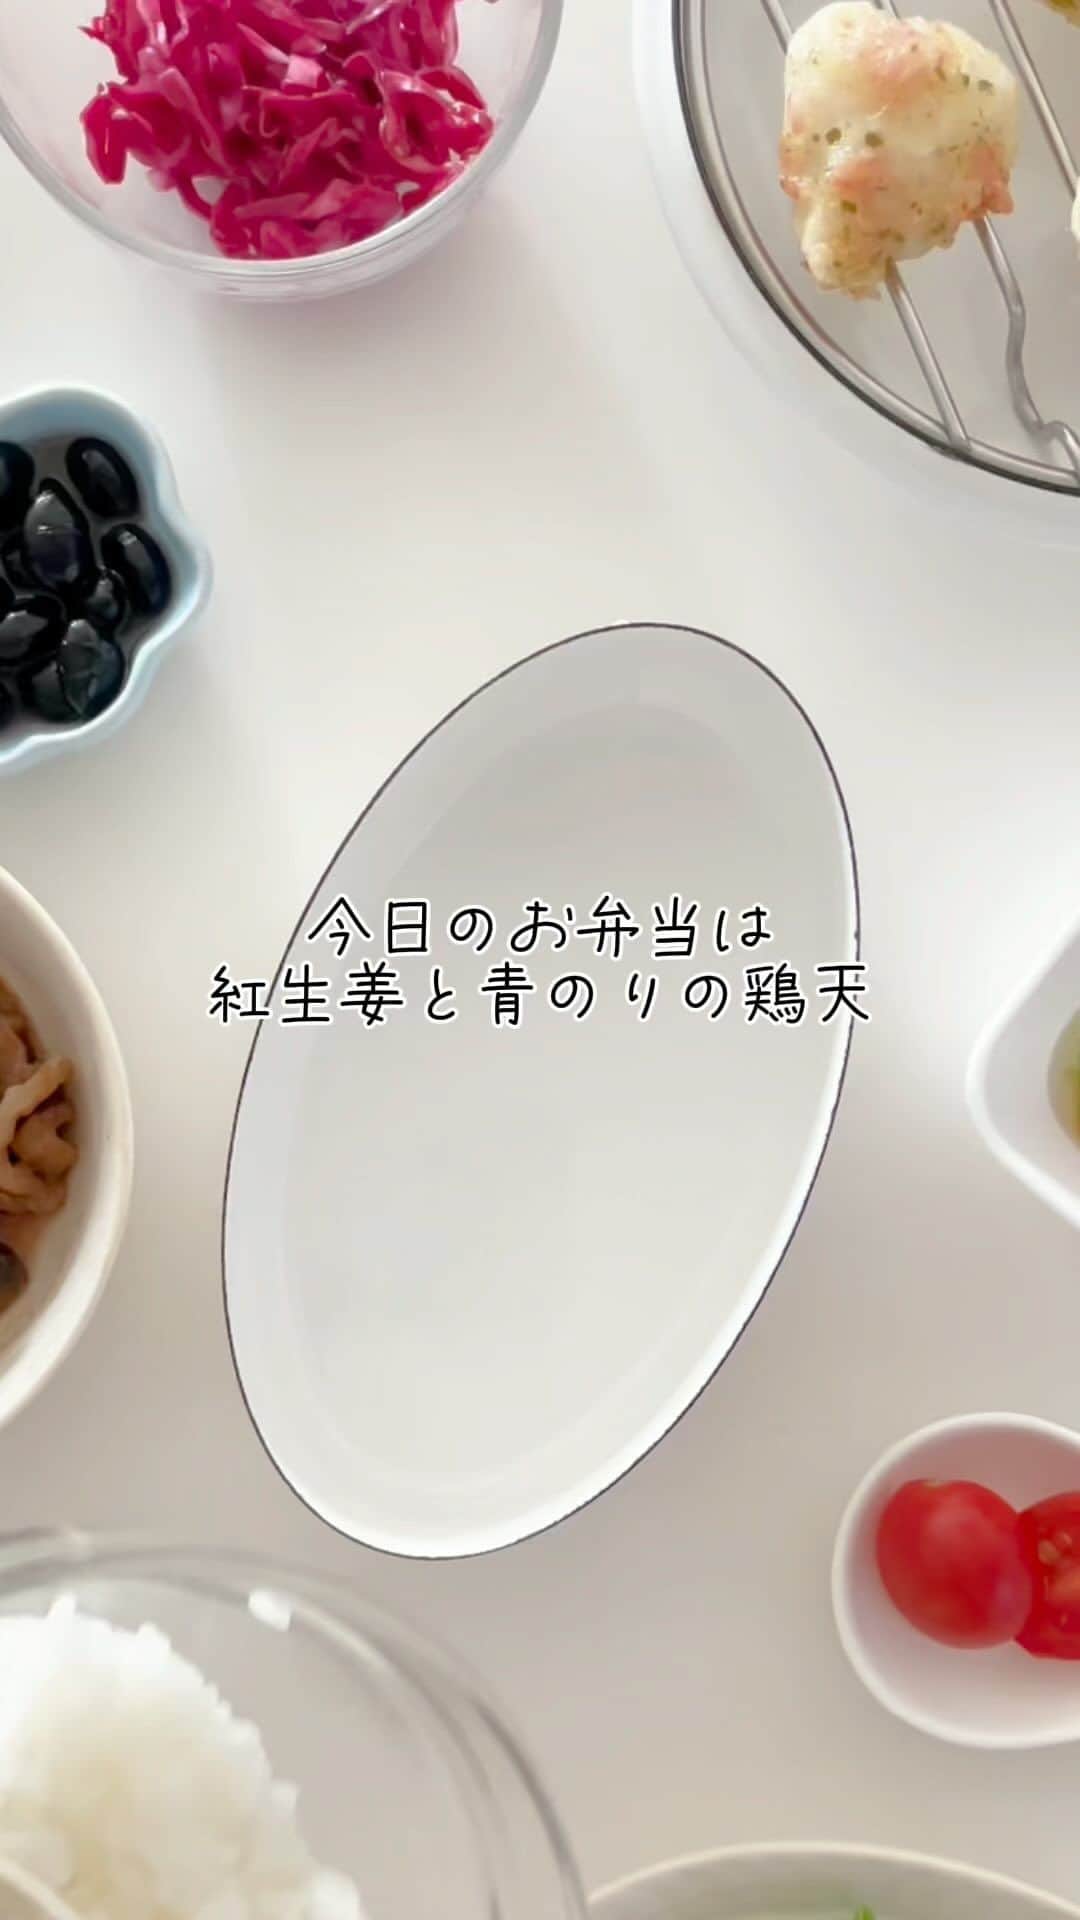 maki ogawaのインスタグラム：「先日のお弁当です。  メインのおかずは ◎紅しょうがと青のりのとり天 です。  サブのおかずは ◎マッシュルームと大根、牛乳の煮物 ※前日の晩ご飯の残り物です。 一度レンチンしてから冷まして詰めました。 ◎紫キャベツの甘酢漬け ◎ピーマンとにんじんのおひたし ◎ミニトマト です。  鶏胸肉は一口大に切った後 砂糖で揉んで15分ほど置いておきます。 (鶏胸肉一枚-180g程度につき、大さじ1の砂糖) 砂糖を水で流して、水気を切った後 紅しょうがと青のりの天ぷら衣をつけて揚げます。 ※砂糖を水で流す時、水が跳ねないように 気をつけてくださいね。私はビニール袋に鶏肉を入れて その中で洗ってます。  砂糖には保湿効果があります。 砂糖を揉み込んだ鶏胸肉は、 パサつかず、しっとり美味しくいただけます🥰  #お弁当  #お弁当動画  #お弁当詰め方  #お弁当詰め方動画  #料理動画 #お弁当記録  #bentobox #bentopacking #japanesebento #bento #obentogram #obento #お弁当部」